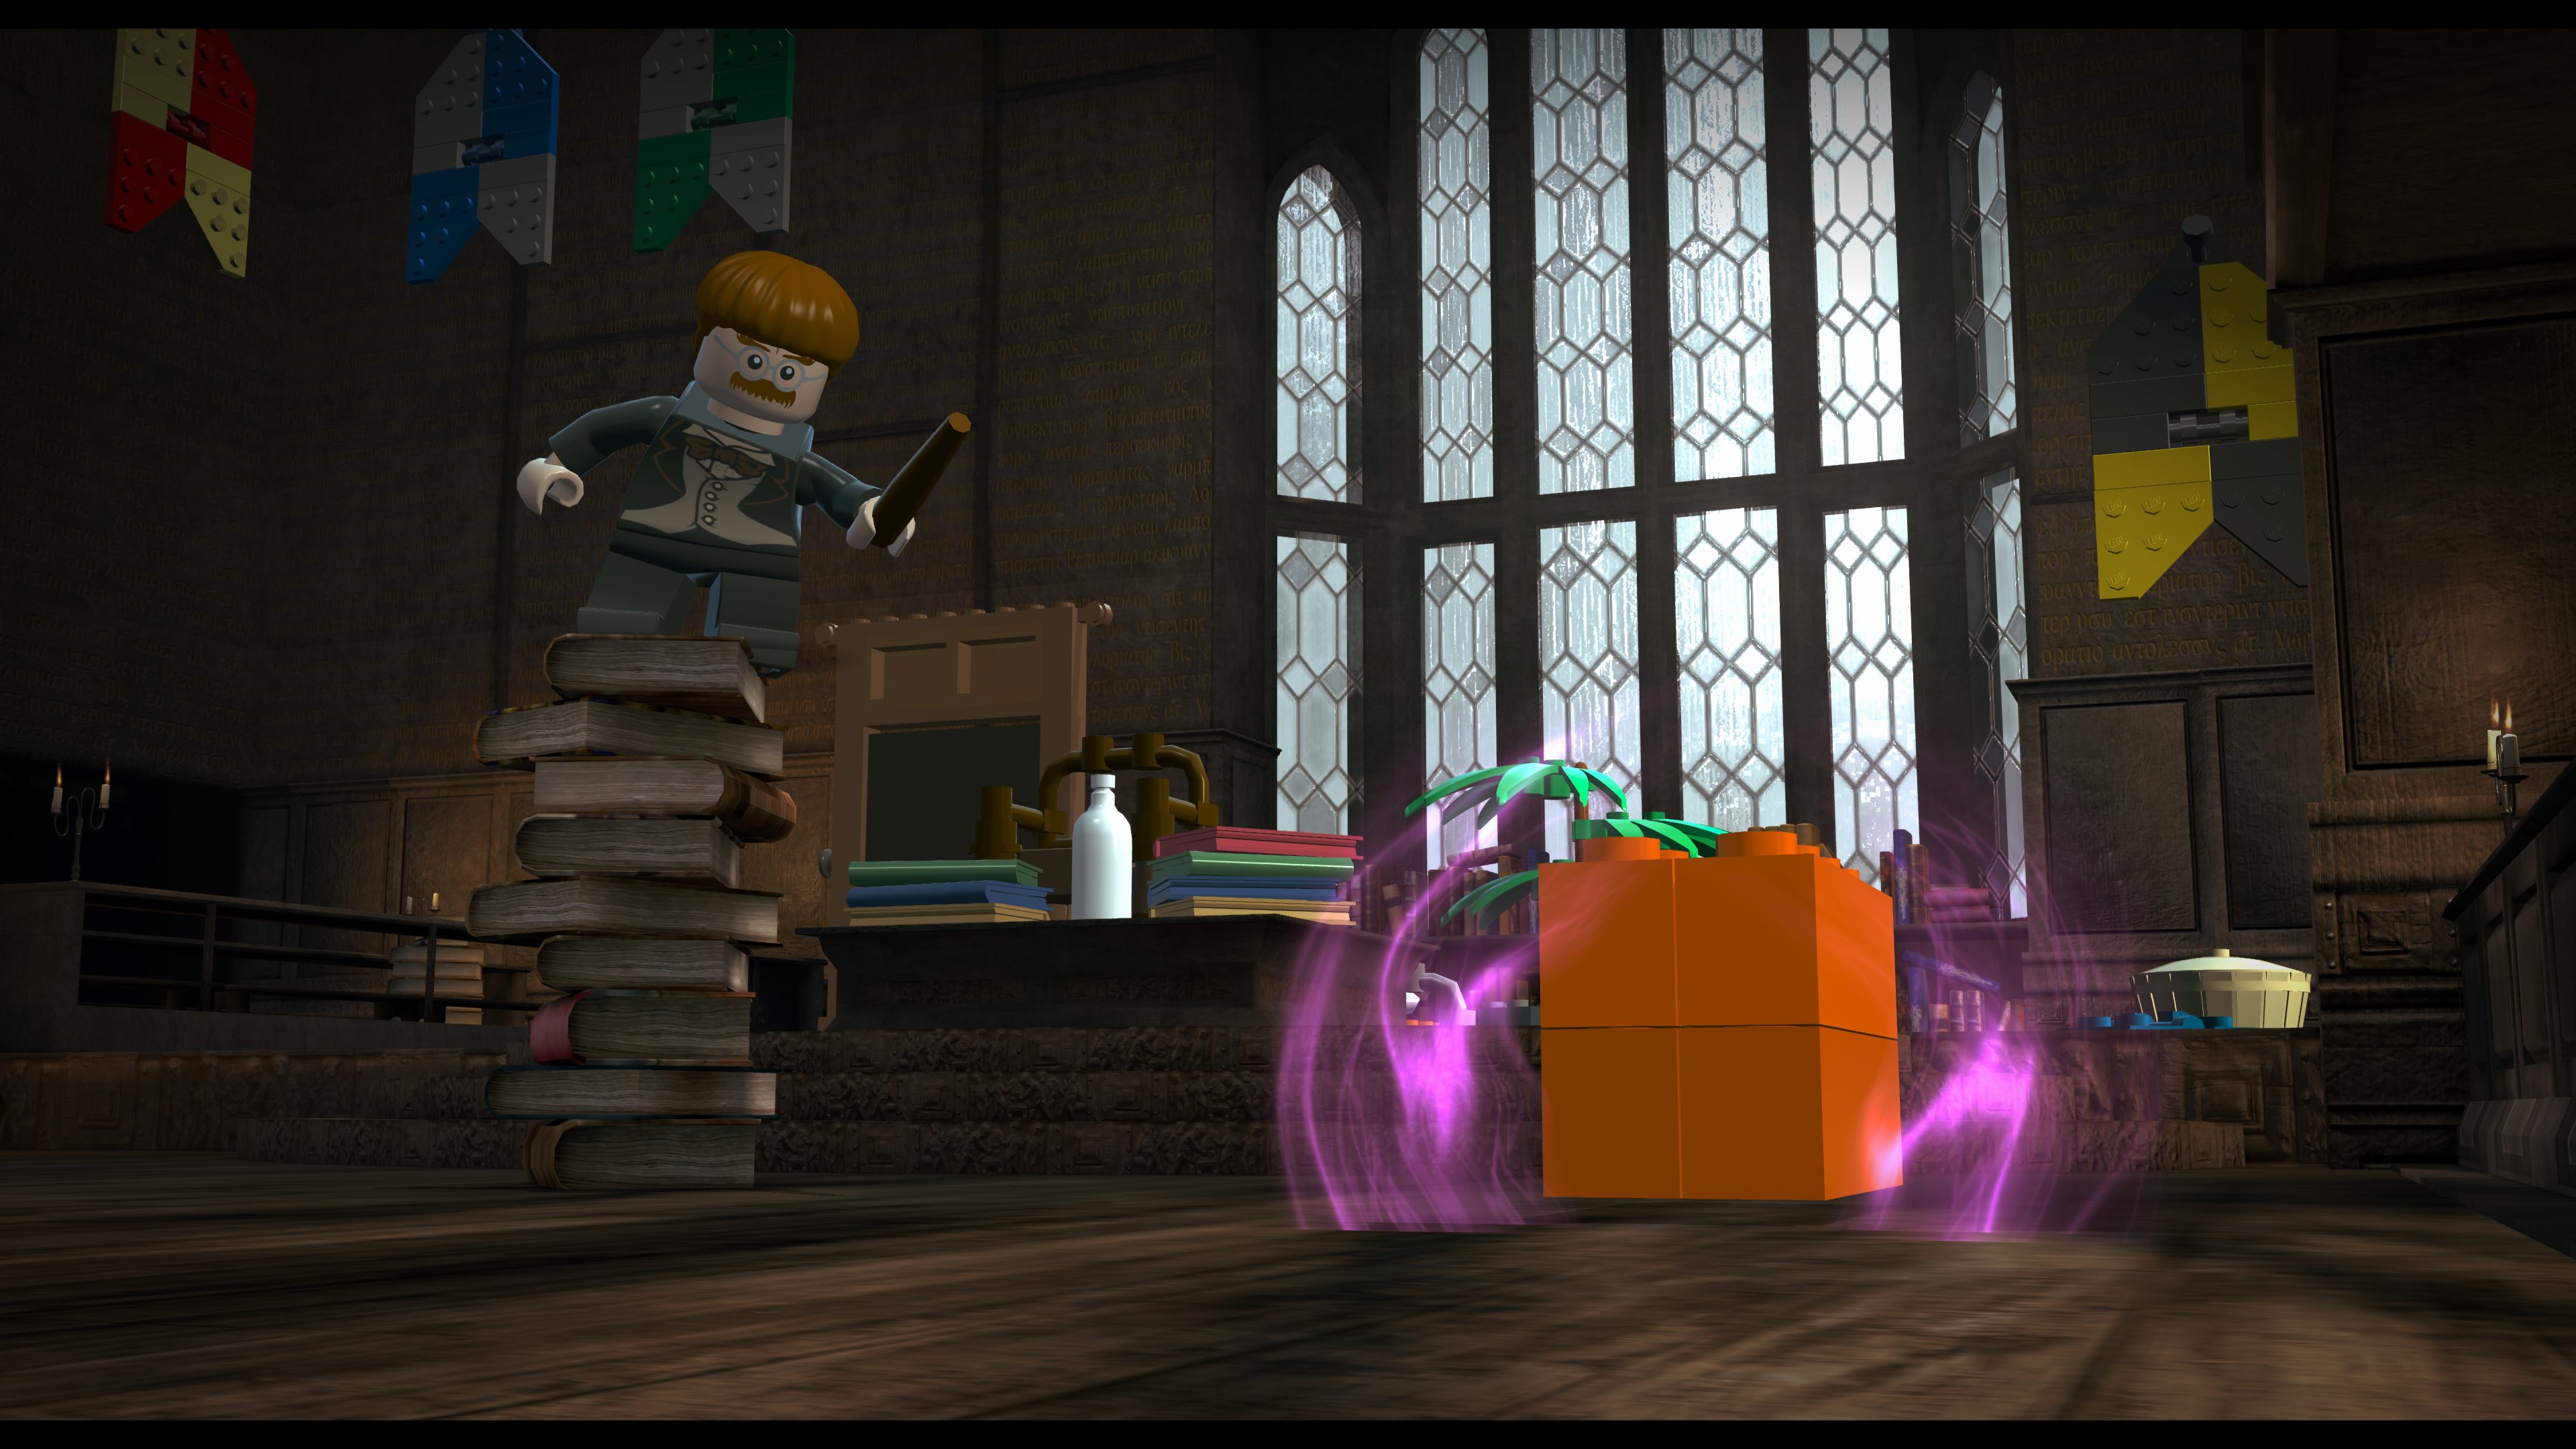 Le jeu Lego Harry Potter sur XboxOne et Switch a maintenant une